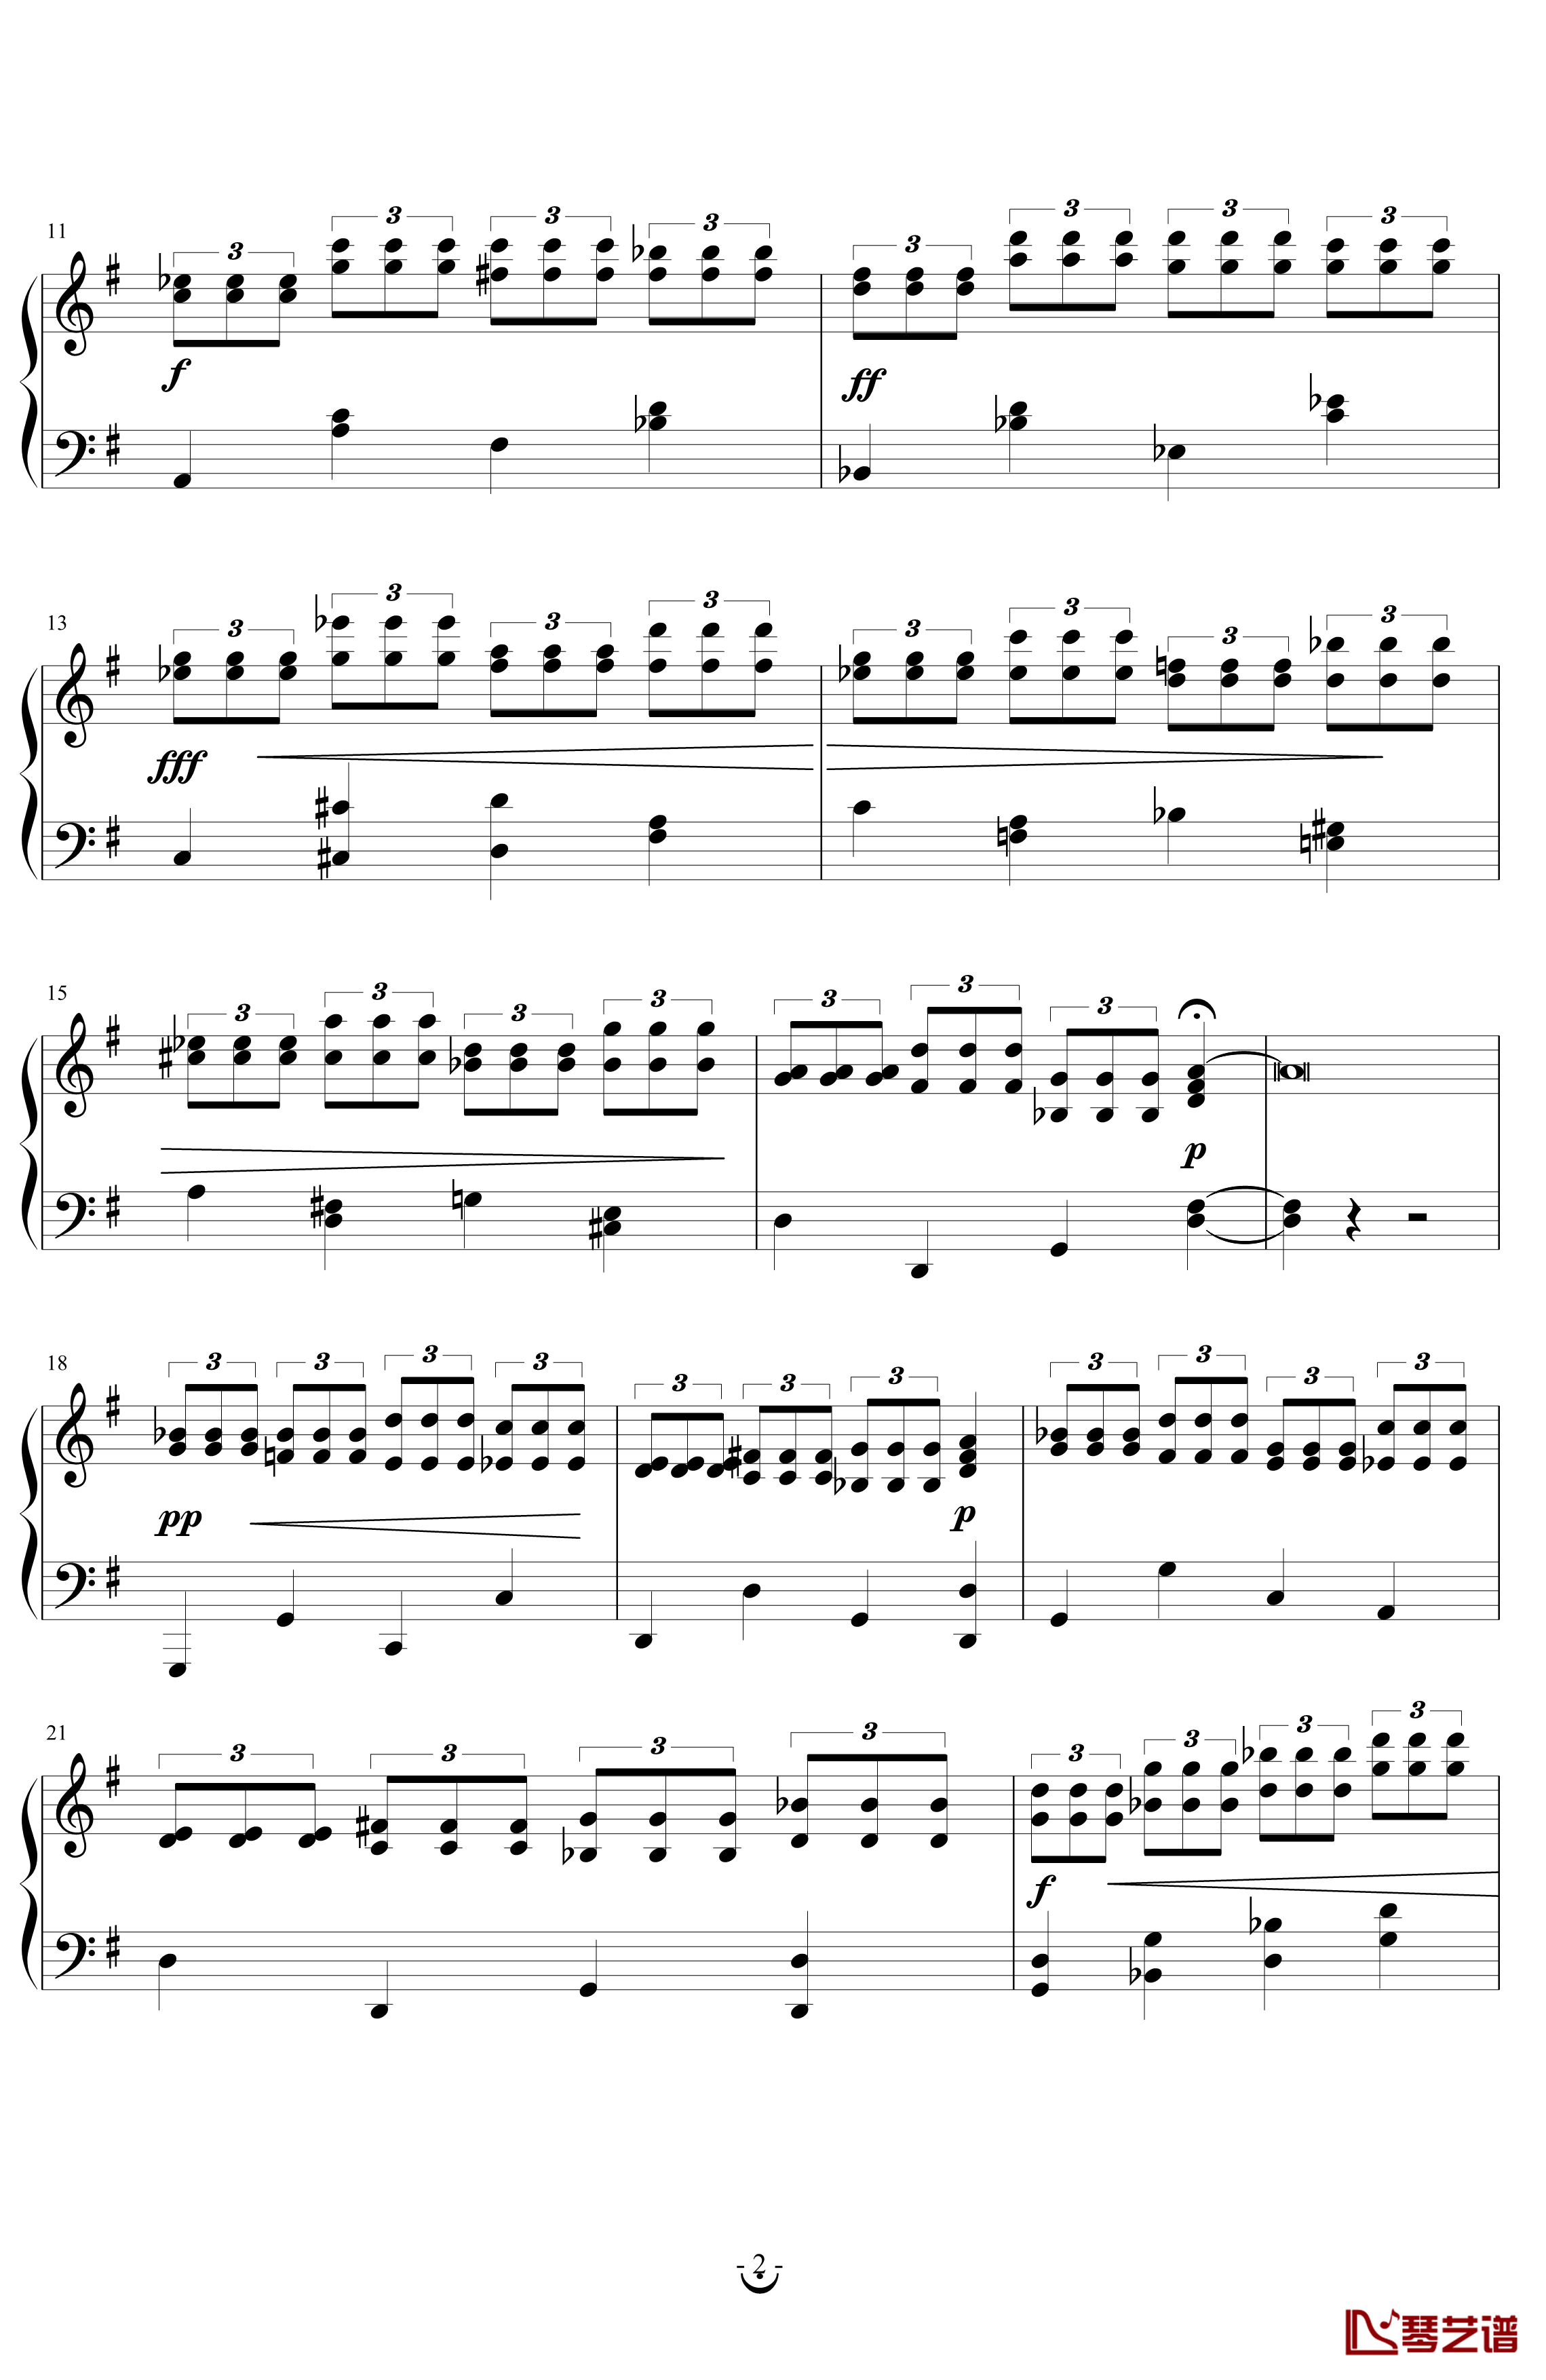 练习曲II钢琴谱-F.斯宾特勒2